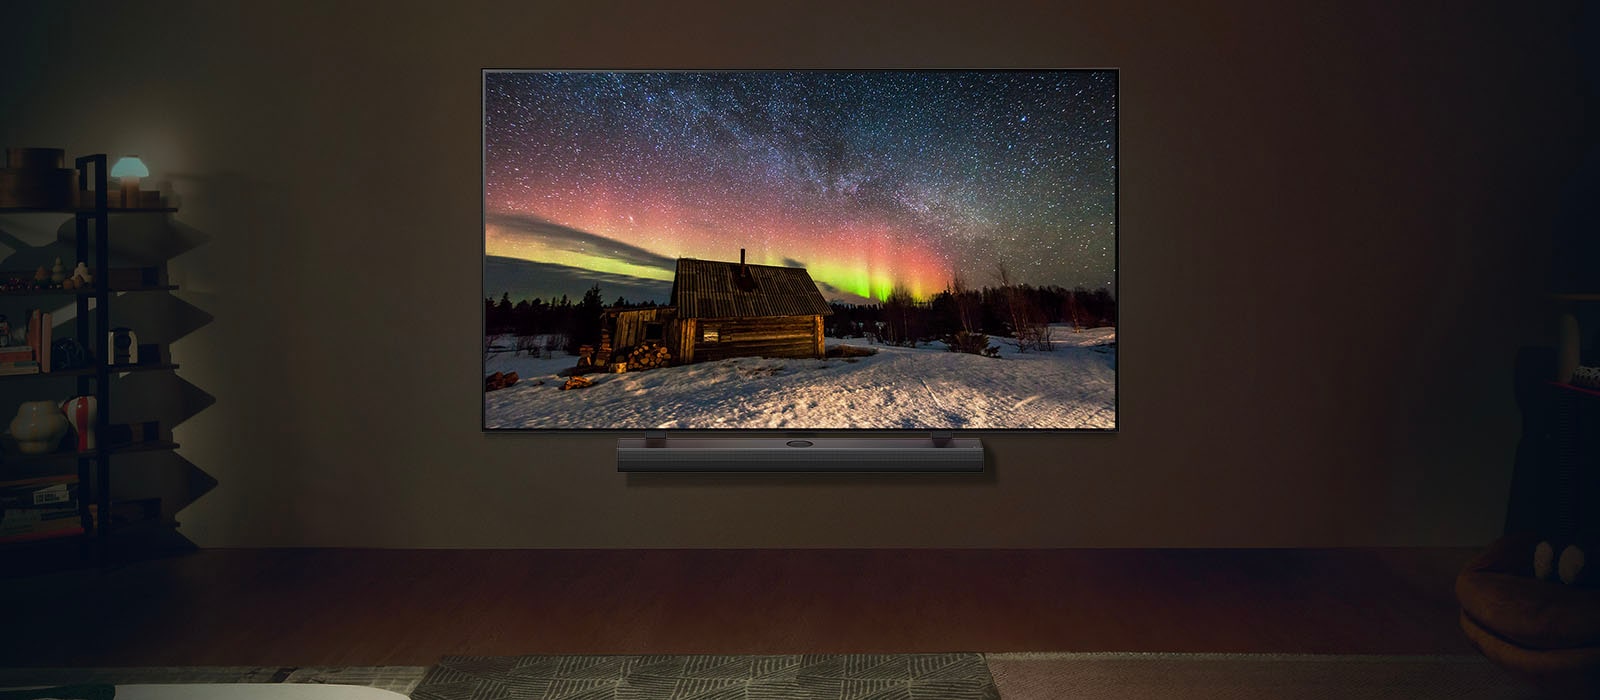 Un LG TV et une barre de son LG dans un salon moderne pendant la nuit. L’écran affiche une image de l’aurore boréale avec une luminosité idéale.